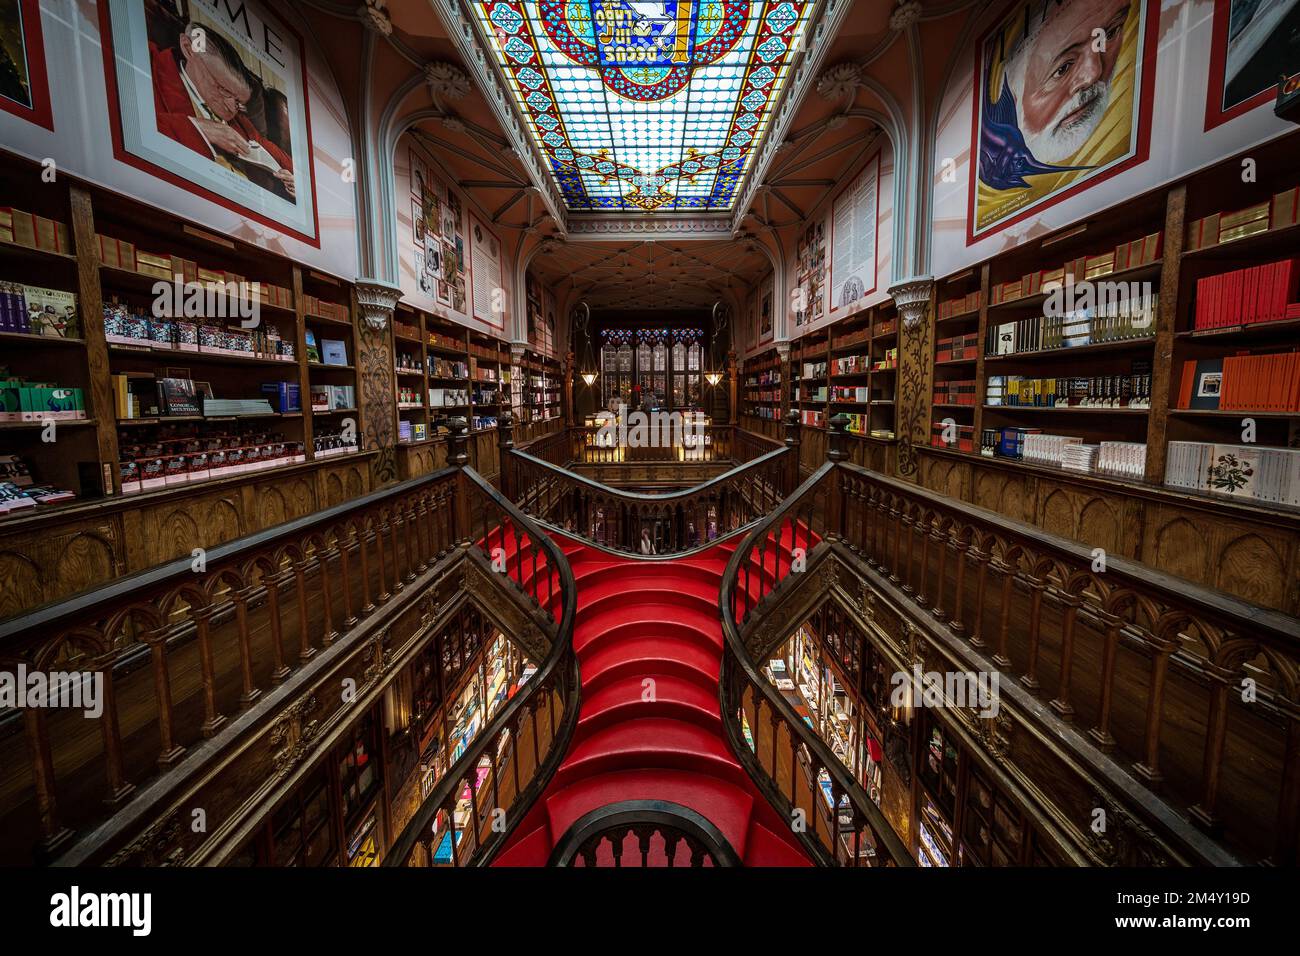 Interior view of Lello Bookstore (Portuguese: Livraria Lello) with its famous wooden staircase in the Historic Centre of Porto (Oporto), Portugal. Stock Photo